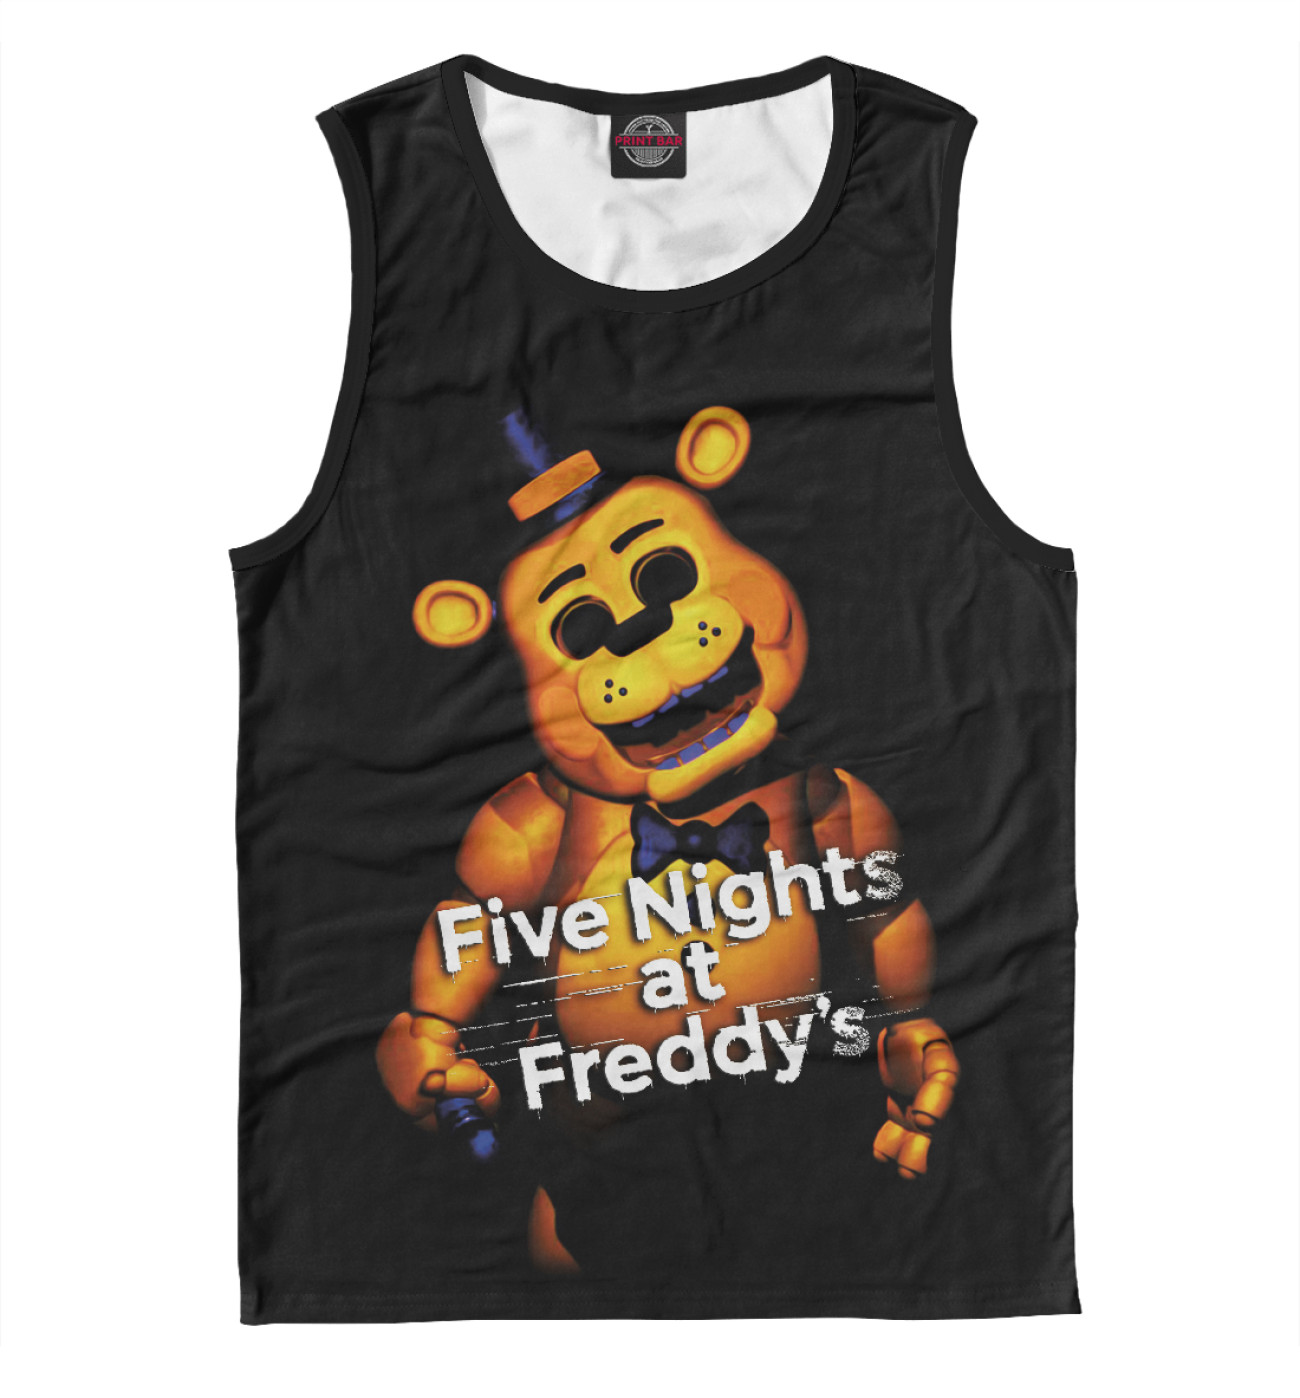 Мужская Майка Five Nights at Freddy's, артикул: FIV-352510-may-2